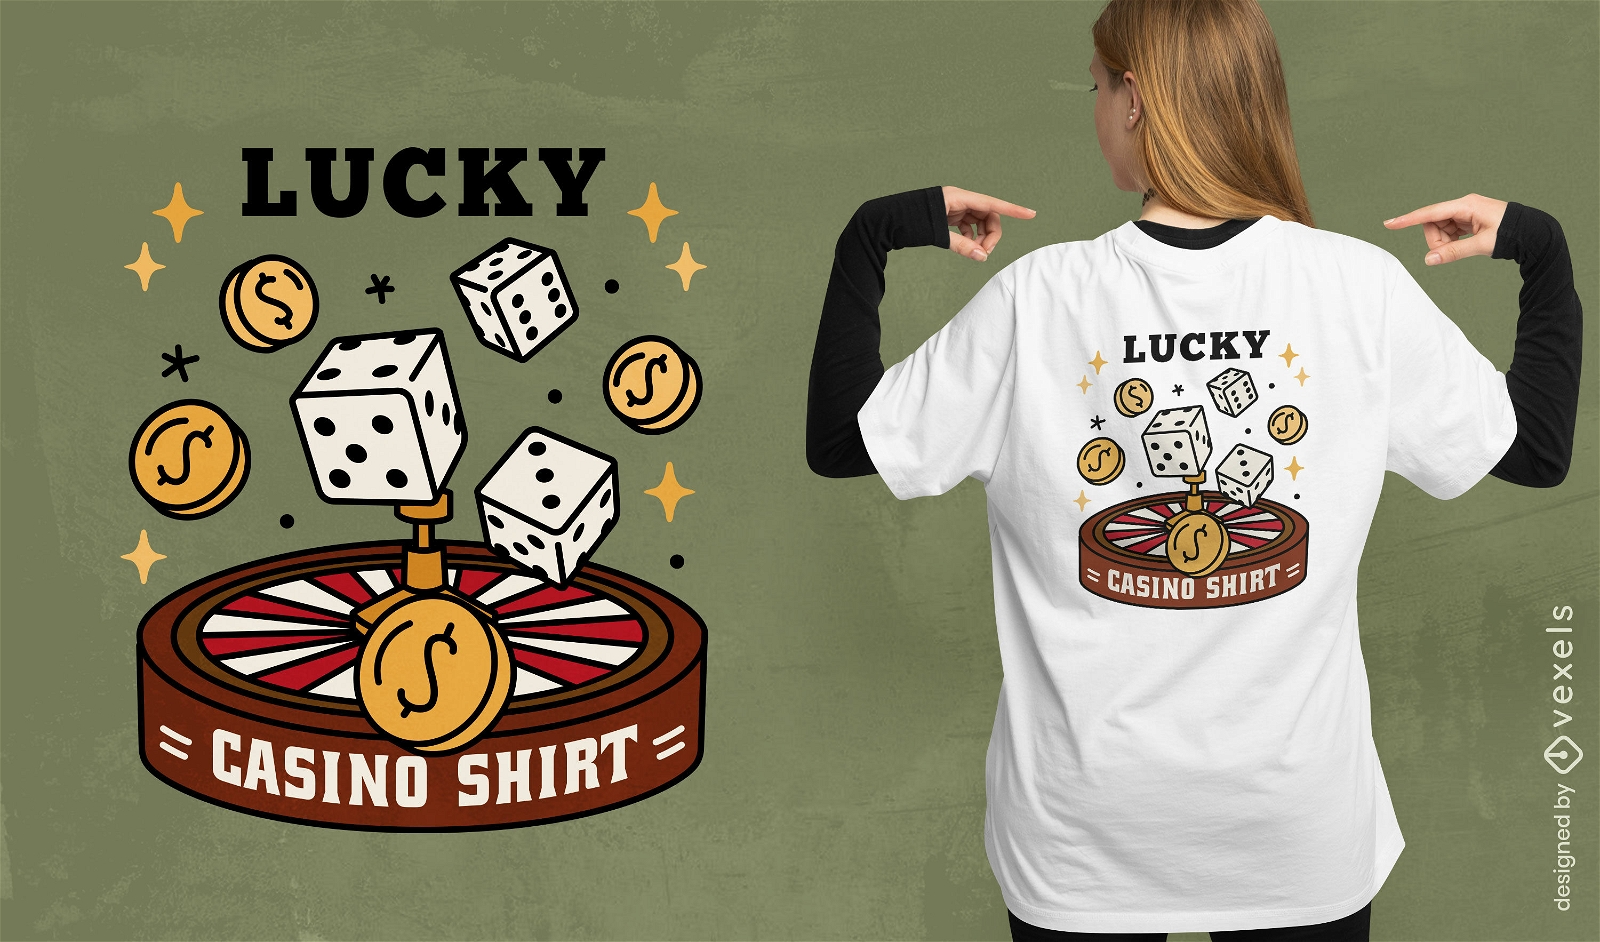 Dise?o de camiseta Lucky Casino Shirt.